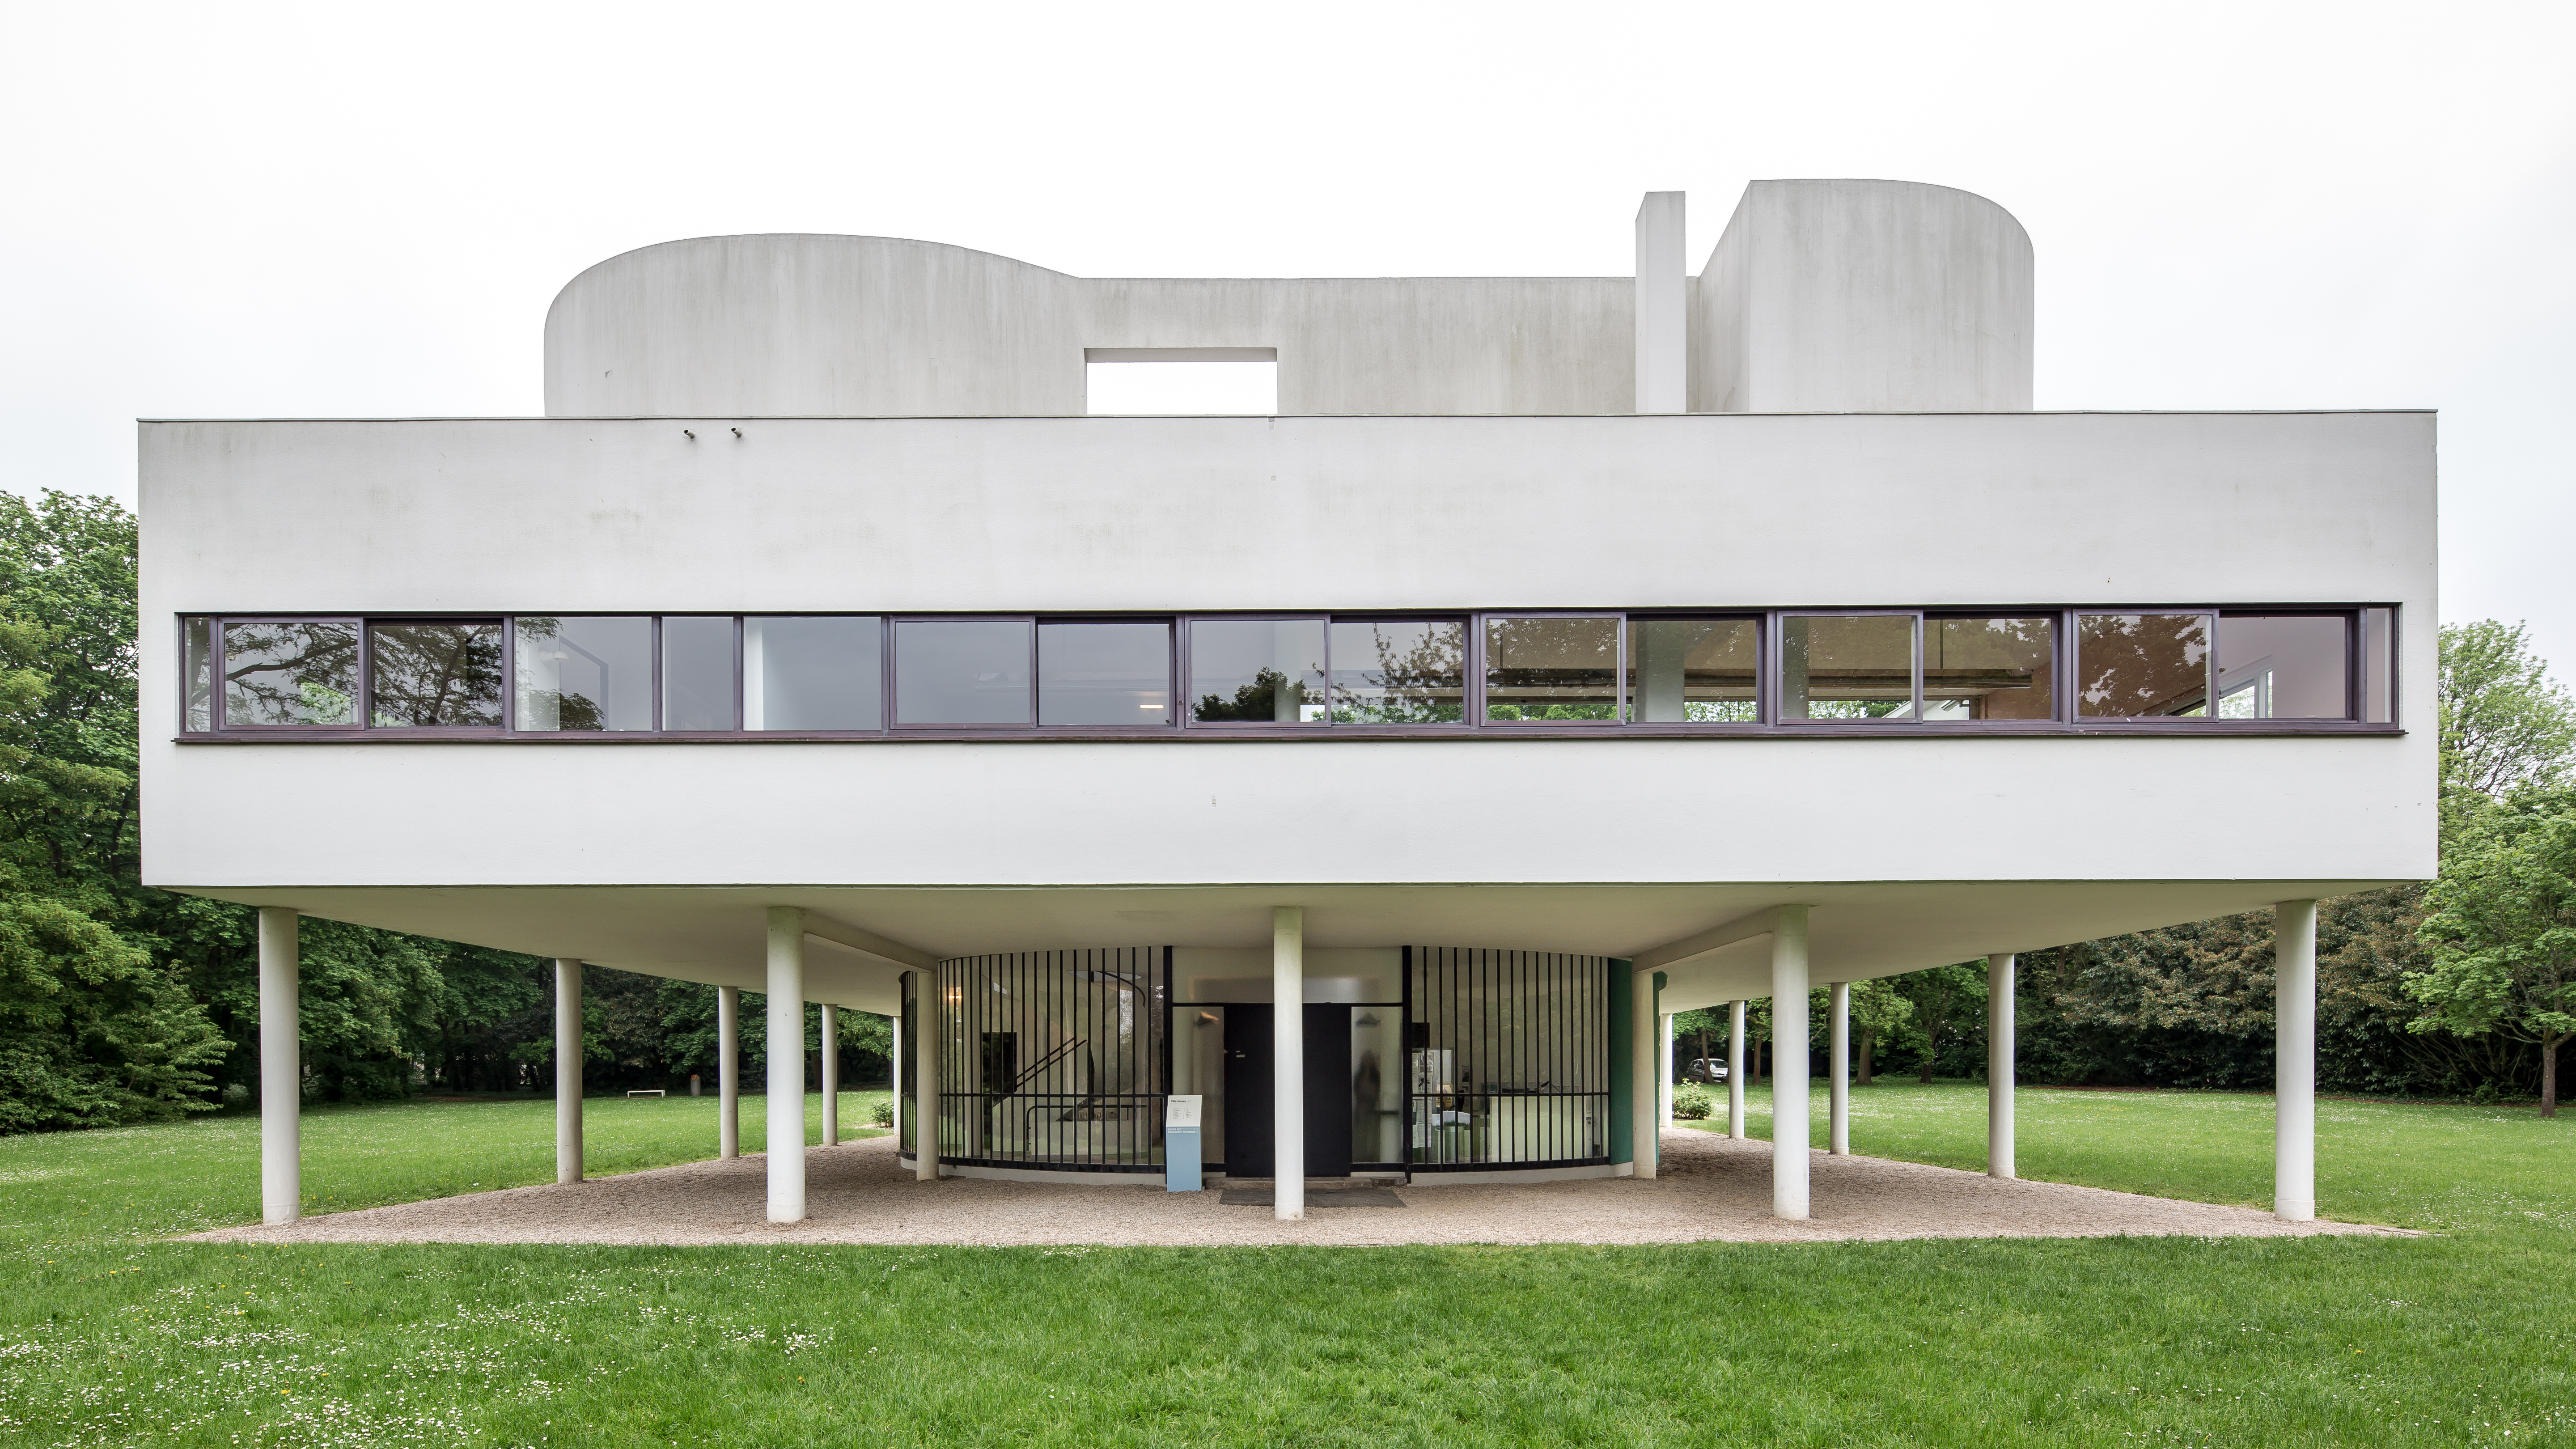 Le Corbusier's modernist colour palette elevates this LA home